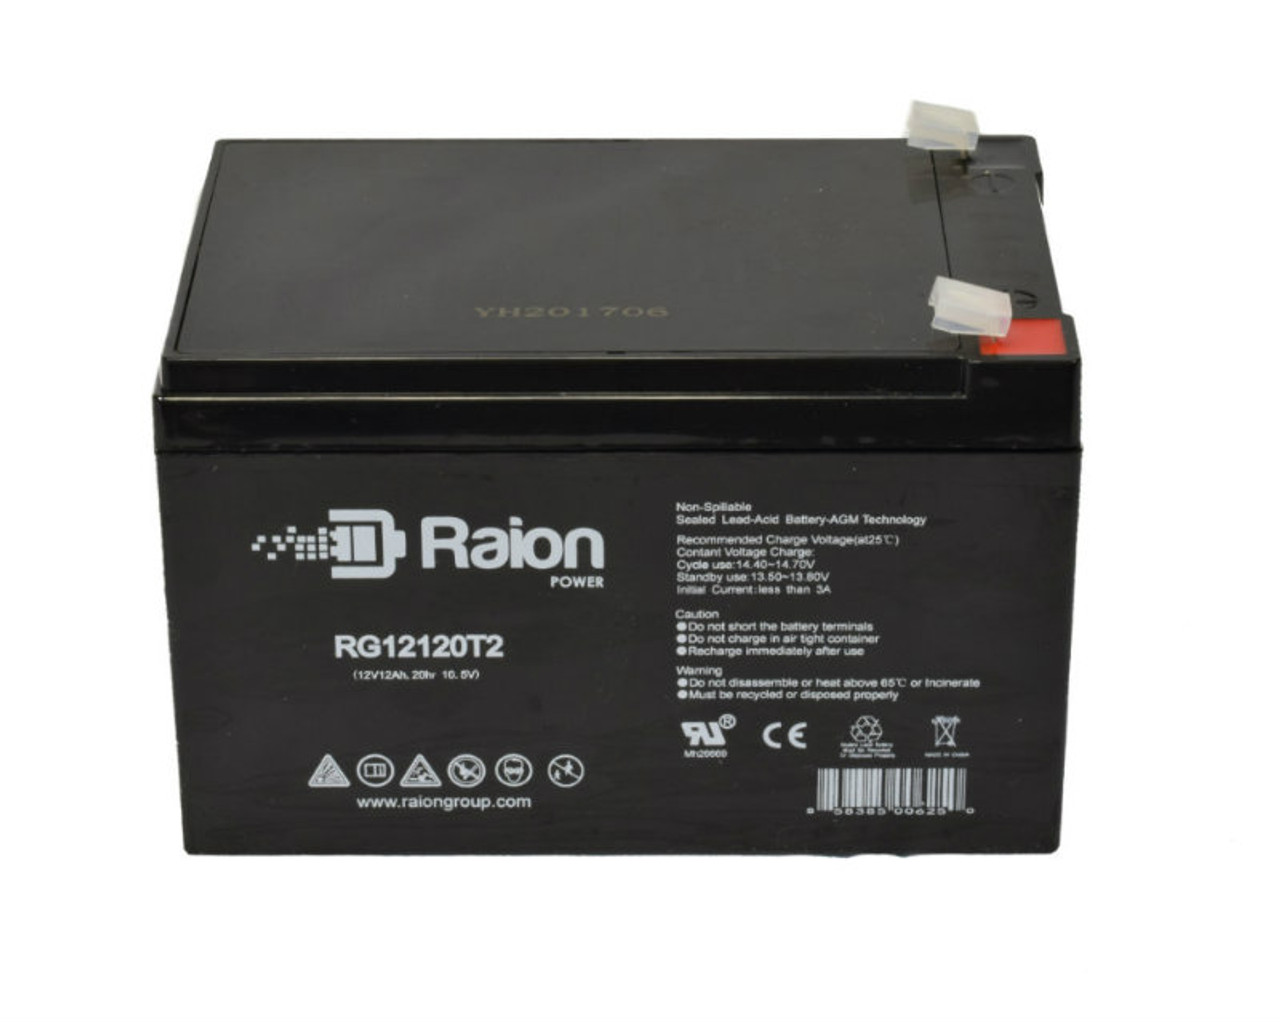 Raion Power RG12120T2 SLA Battery for BPOWER BPL 12-12